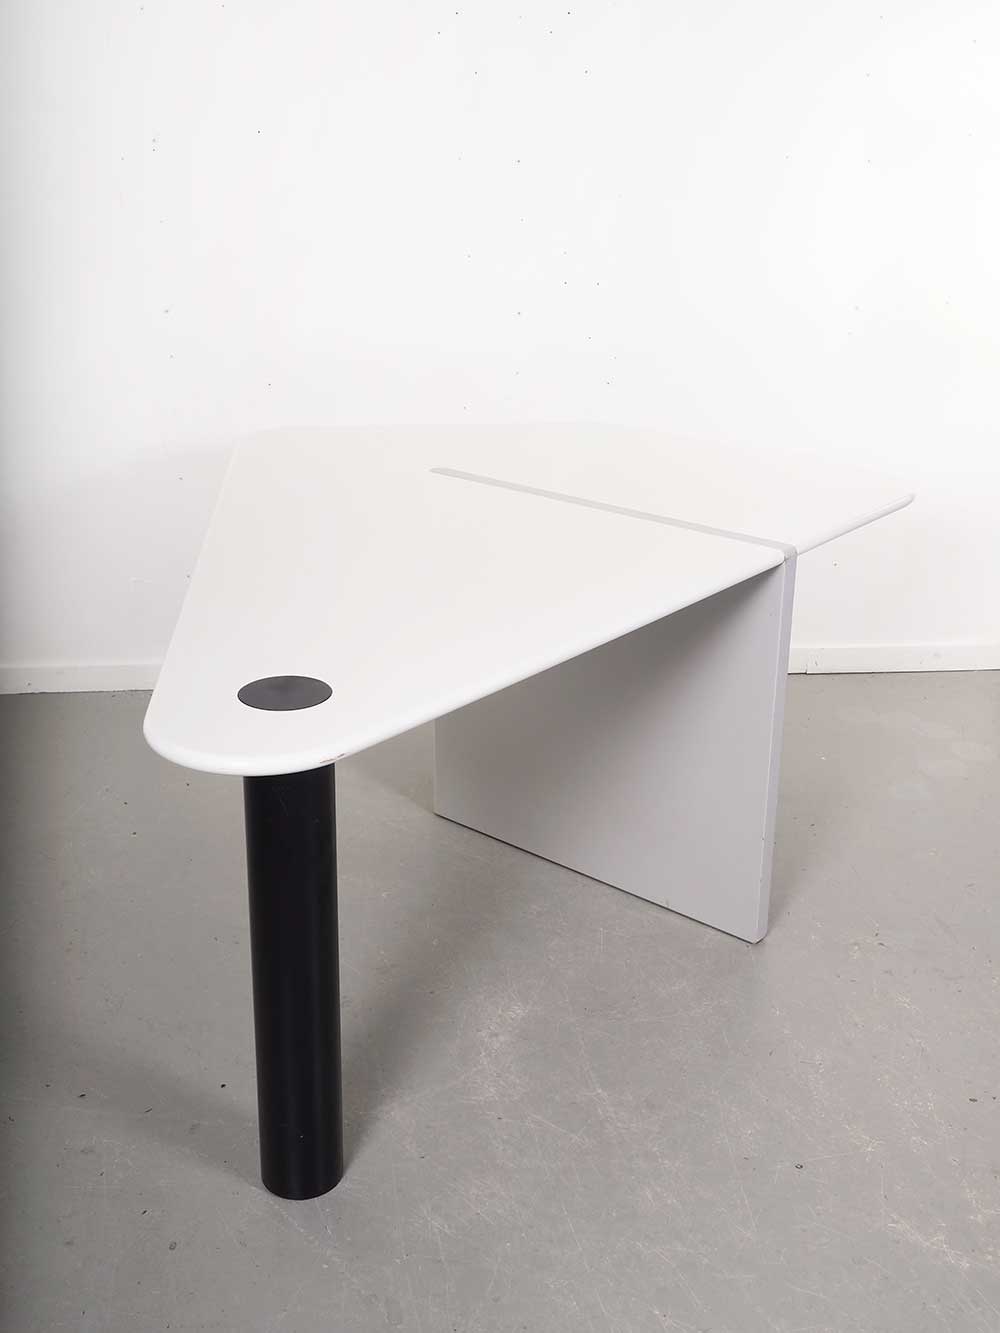 Kyte vlieger tafel Castelijn Straven dutch design